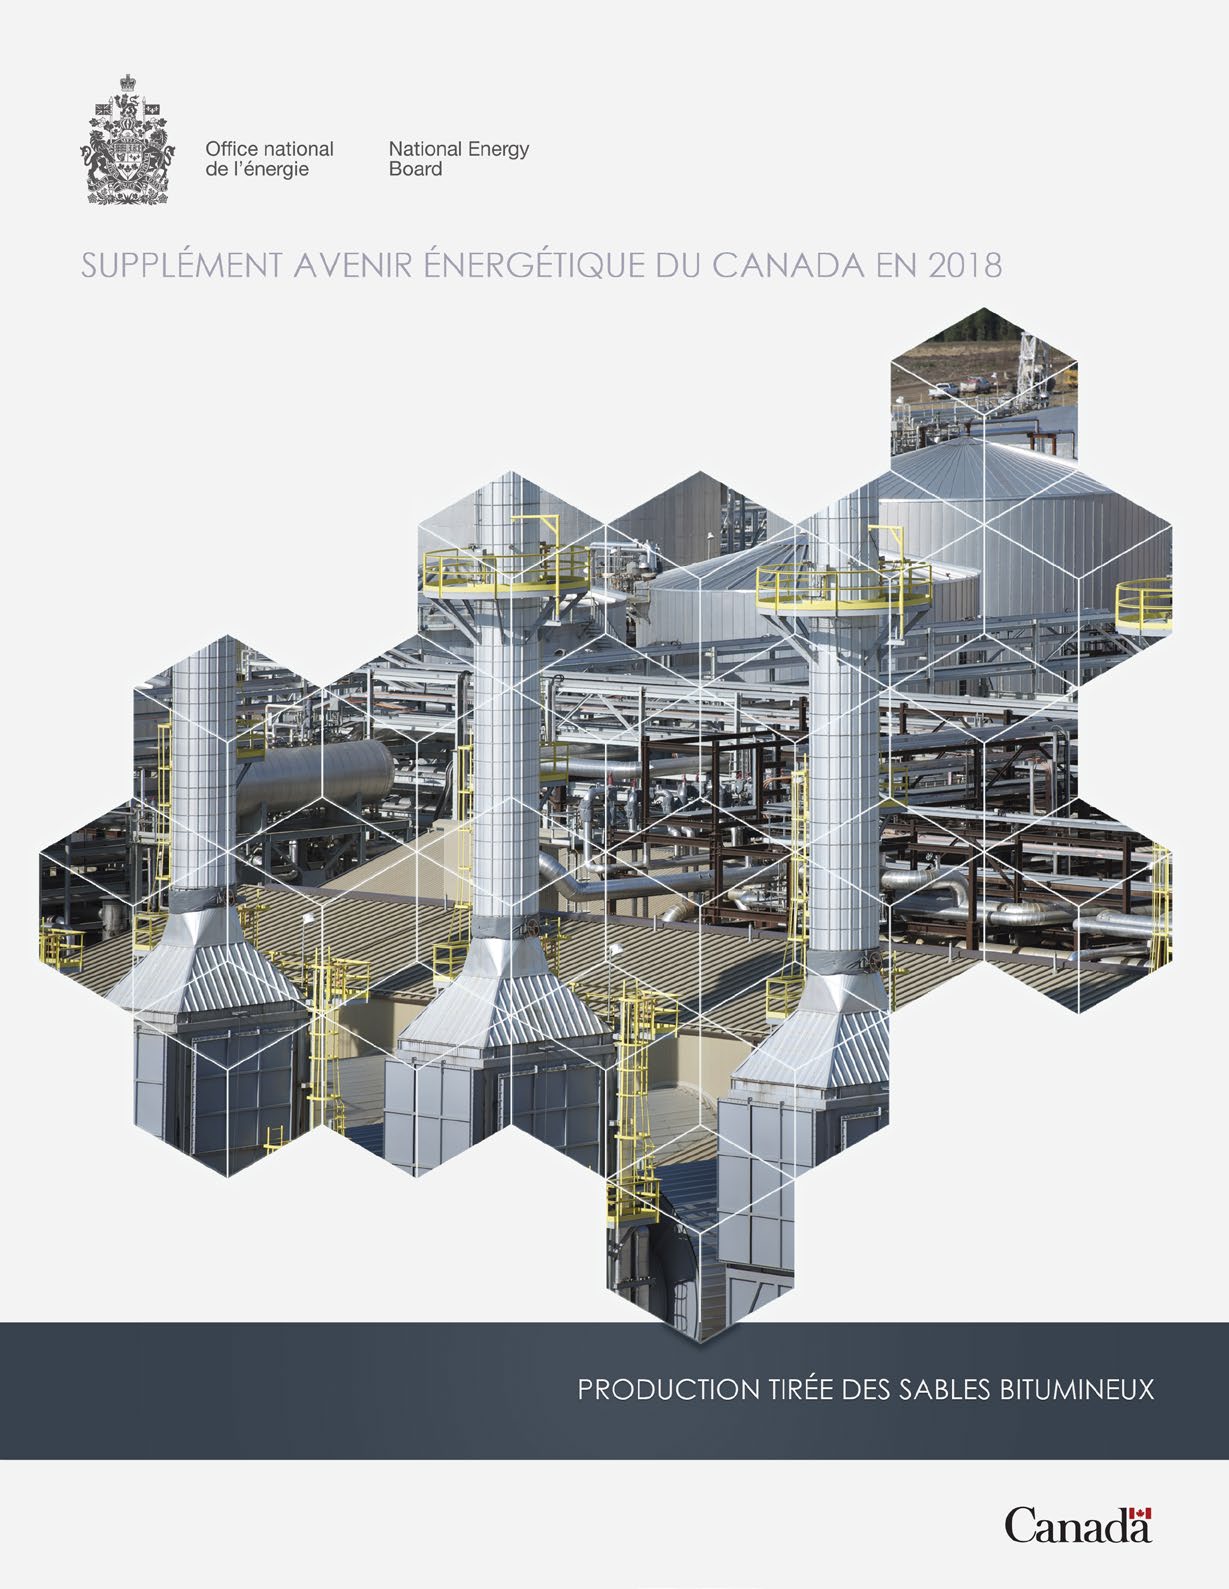 Supplément Avenir énergétique du Canada en 2018 – Production tirée des sables bitumineux